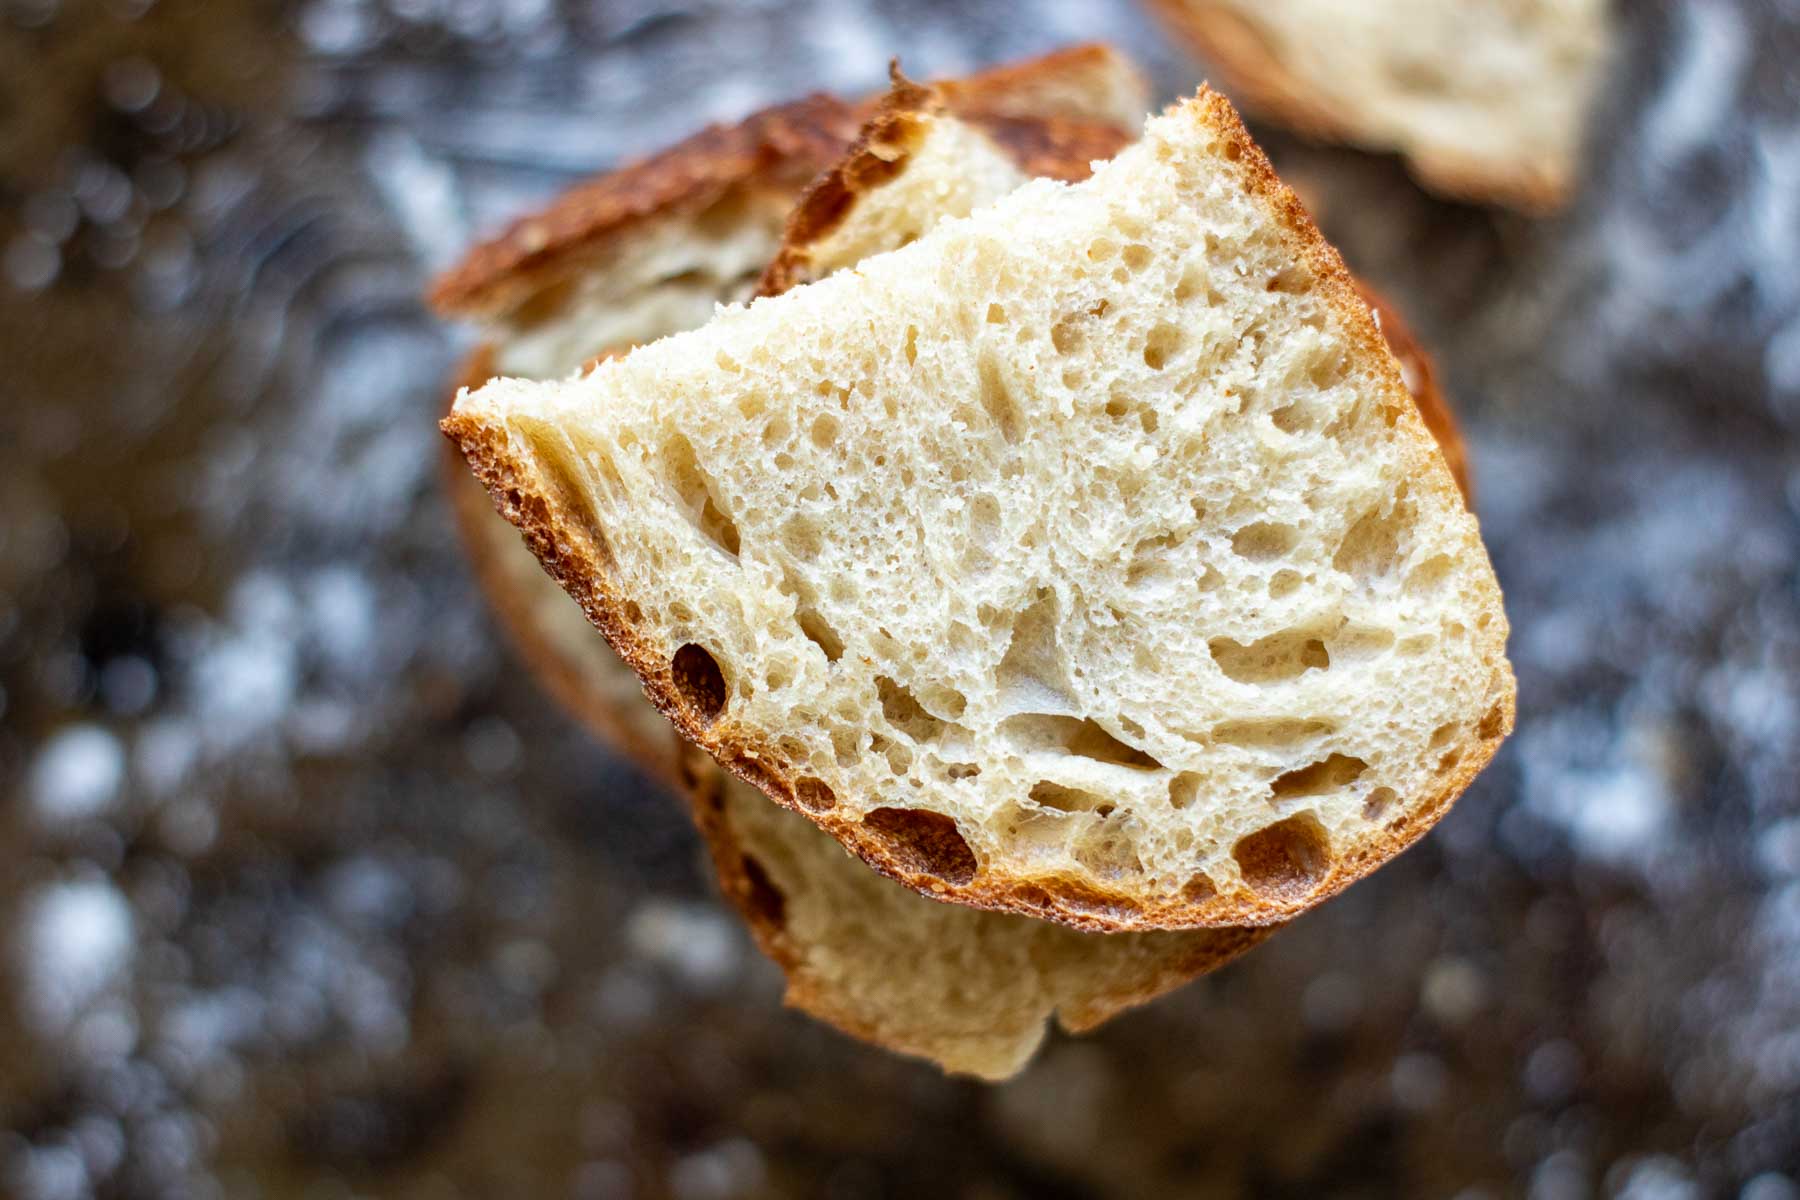 Sourdough bread slices for bruschetta.